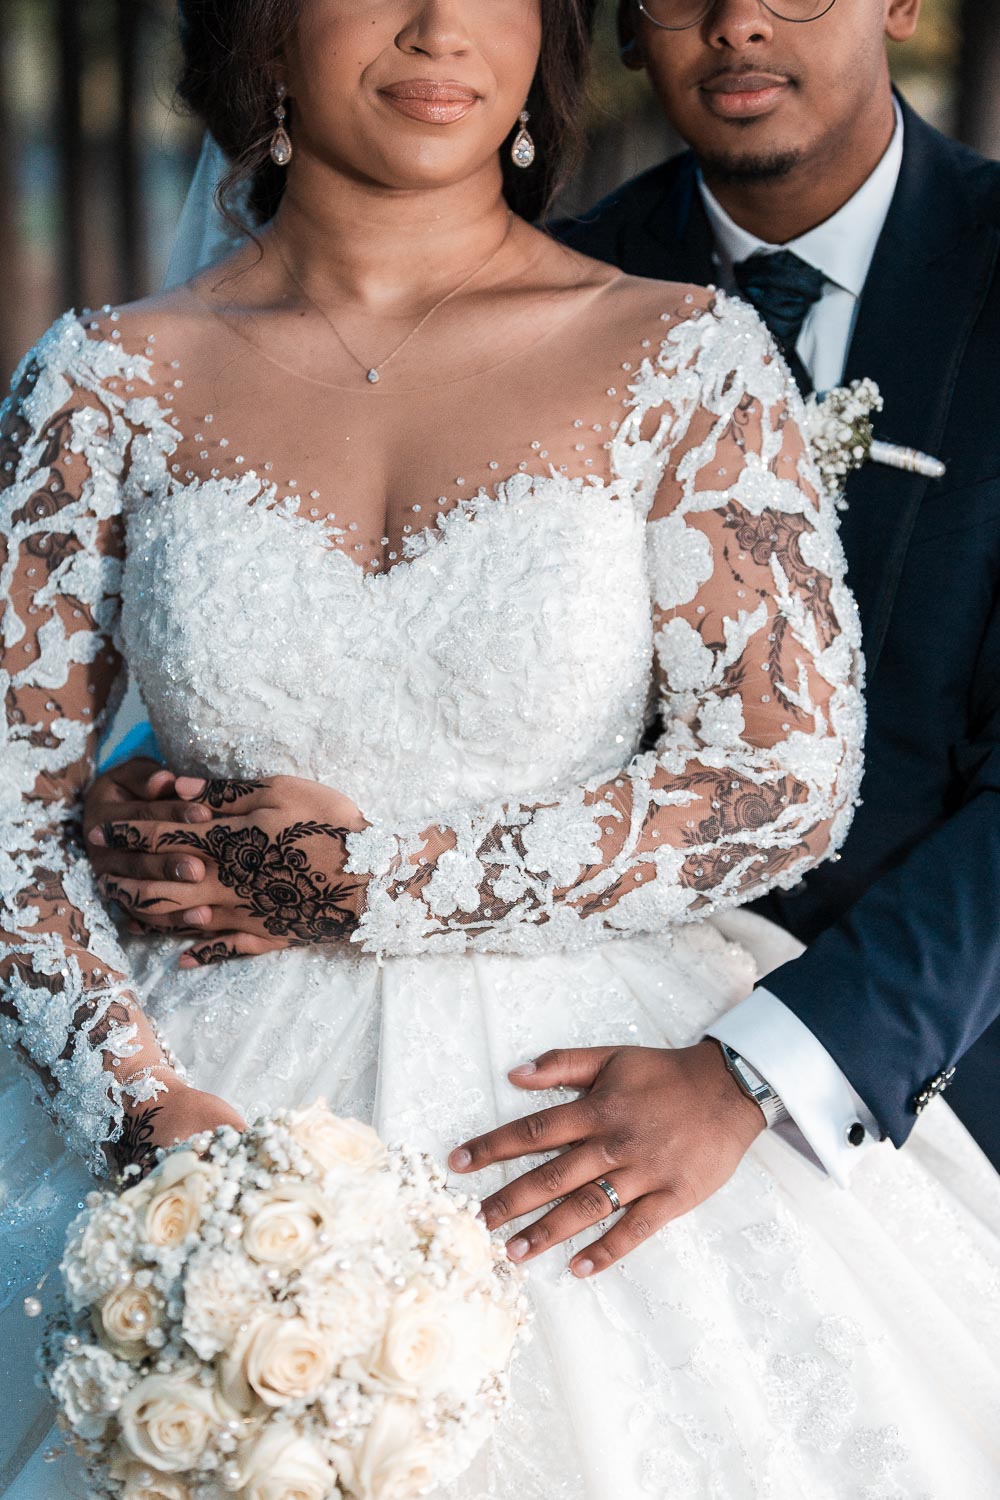 Der Bräutigam umarmt die Braut von hinten. Das Hochzeitsfoto ist unterhalb der Augen bis zur Hüfte angeschnitten und zeigt nur die Details des Kleides, von Hannah Tattoo, vom Braut Strauß, und Brautkleid und Anzug.